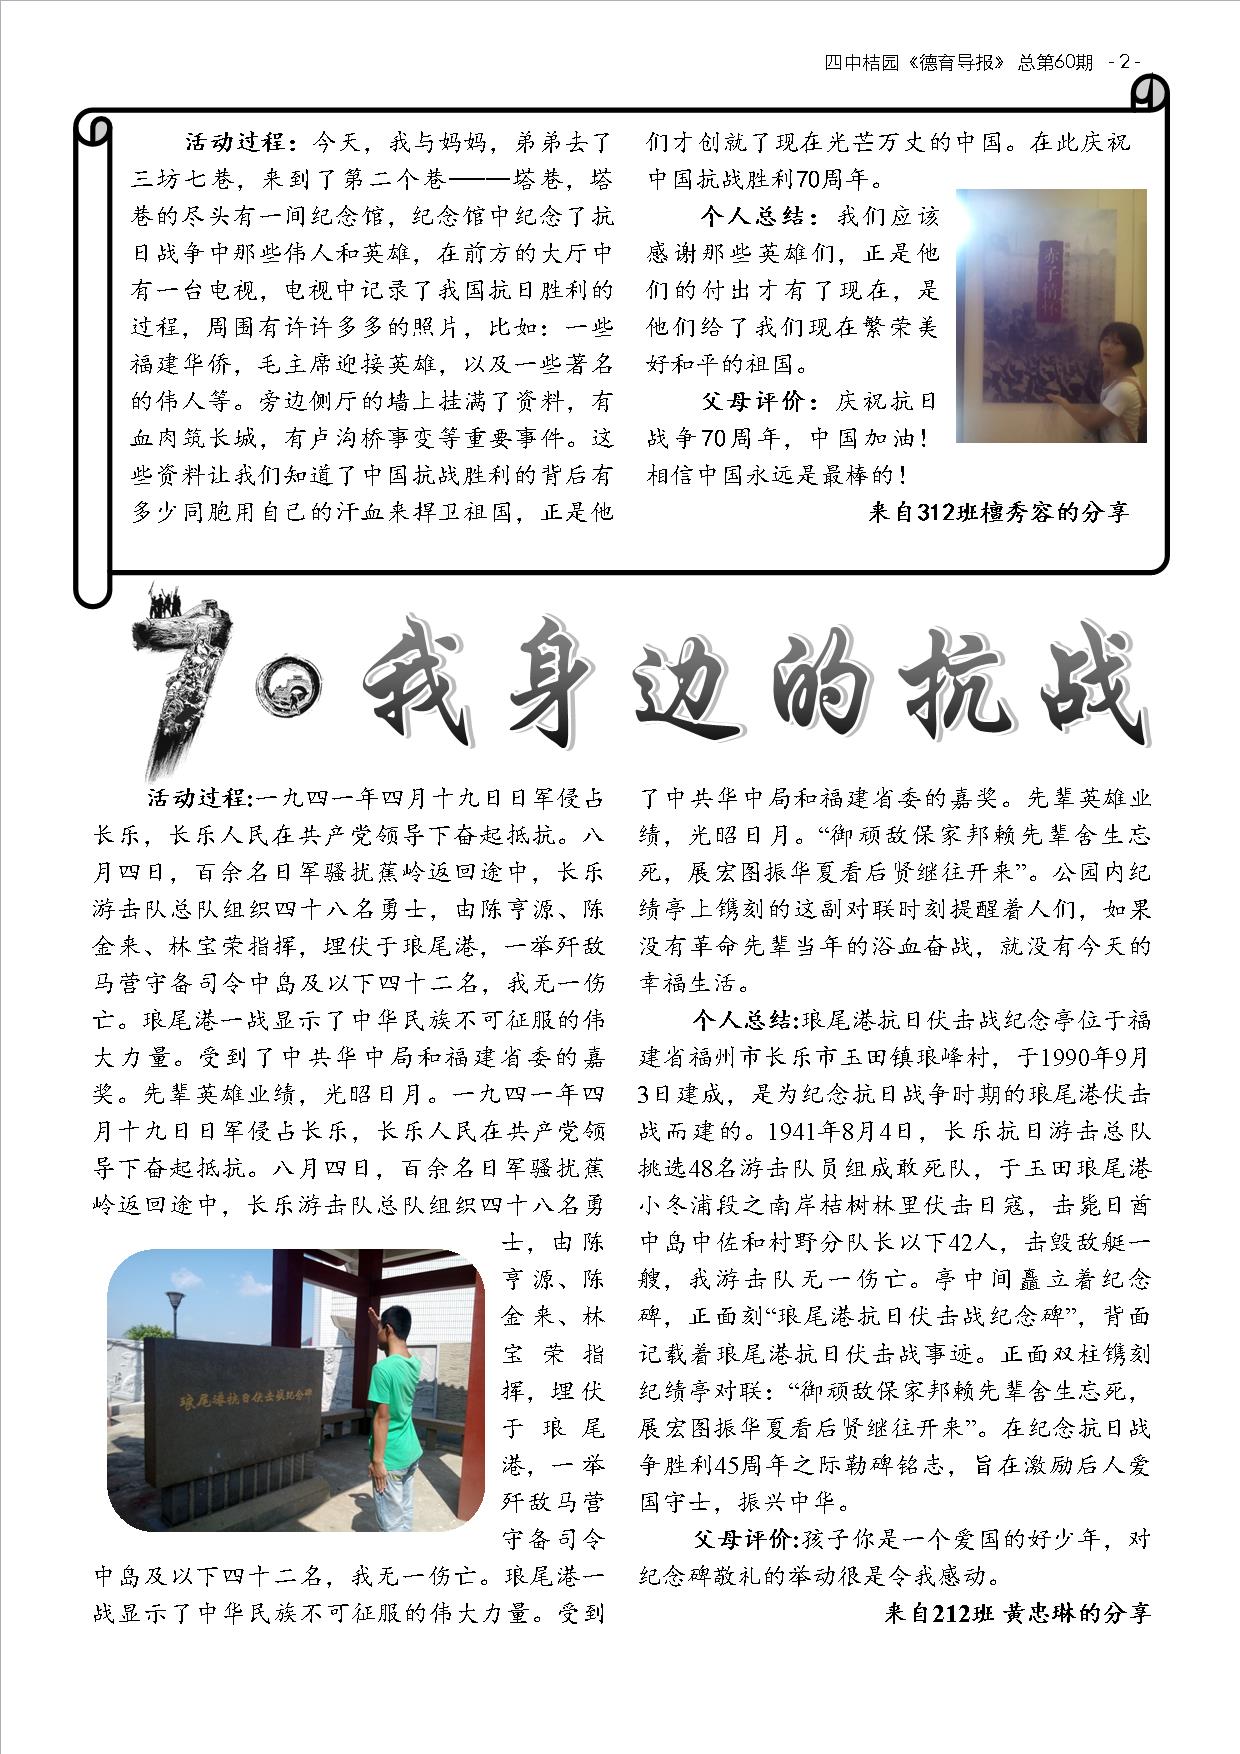 德育导报 NO.60  第7卷，第1期  2015年9月 德育作业 (2).jpg